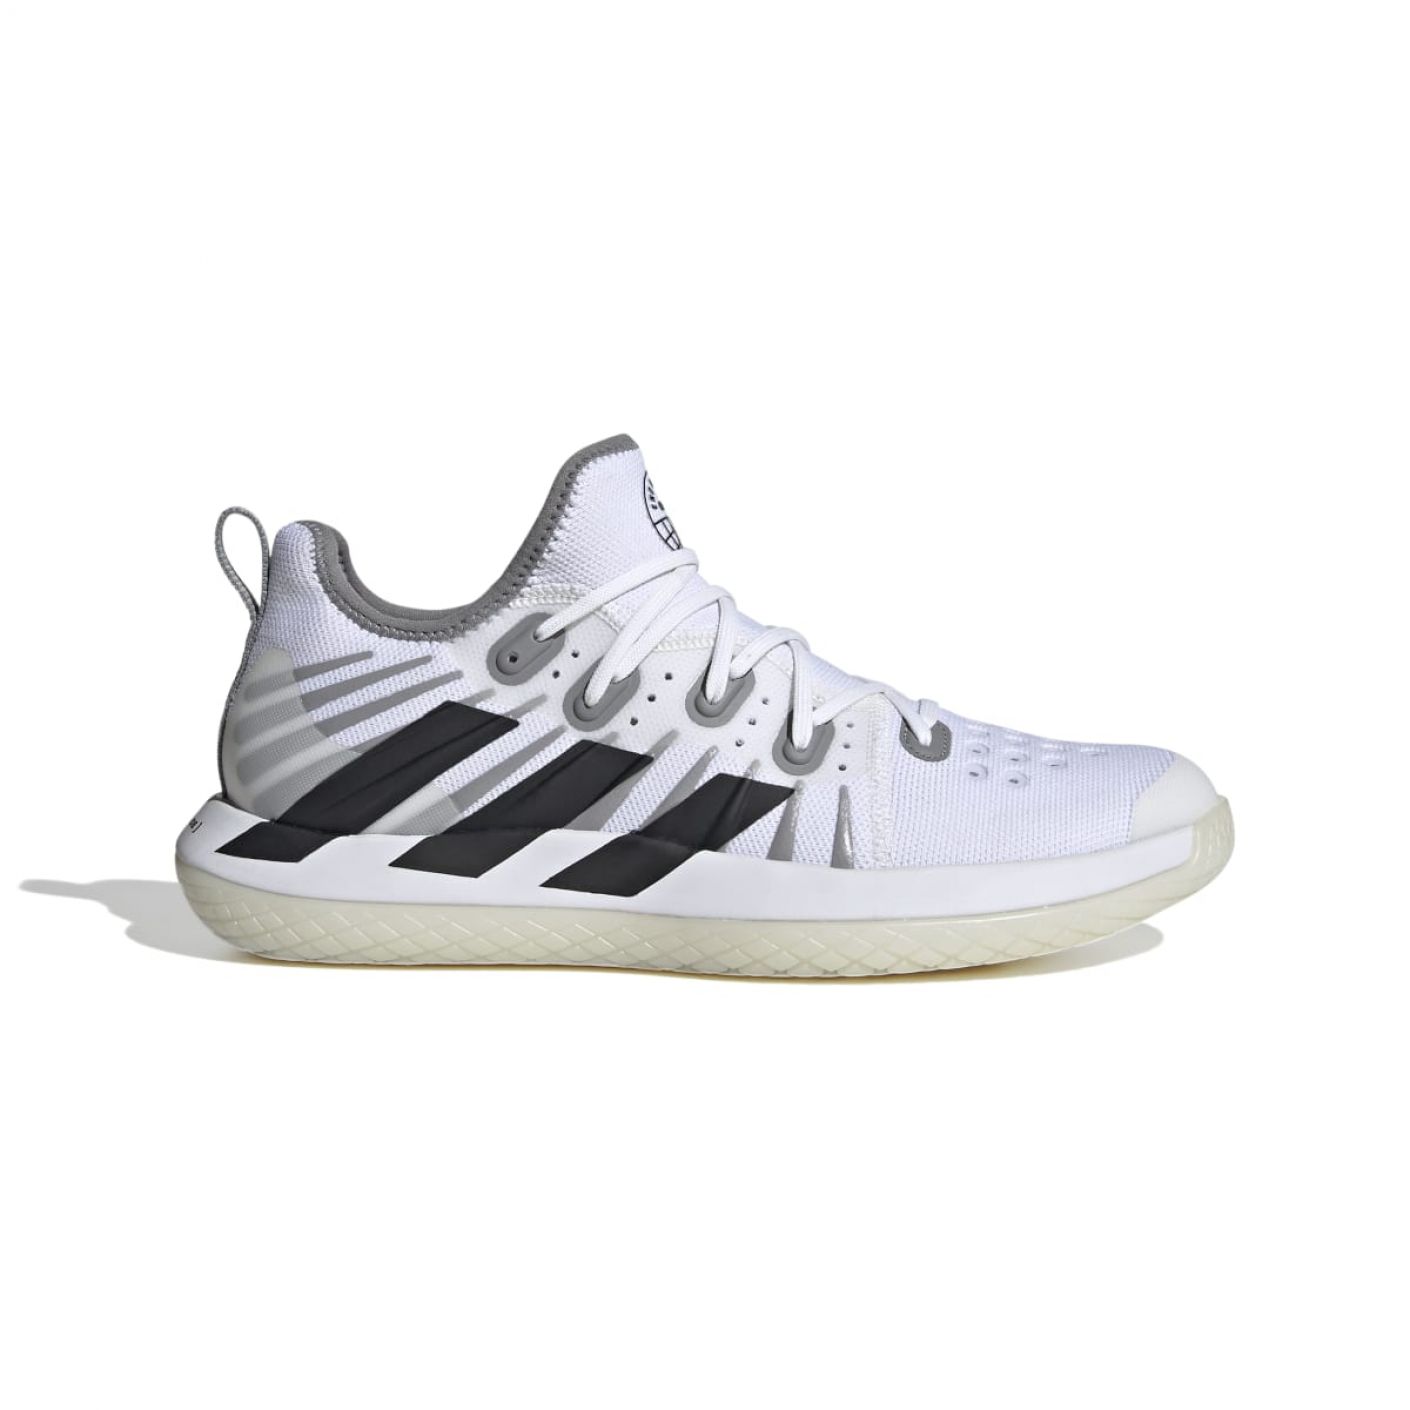 Adidas Stabil Next Gen 2.0 M Ftwr White